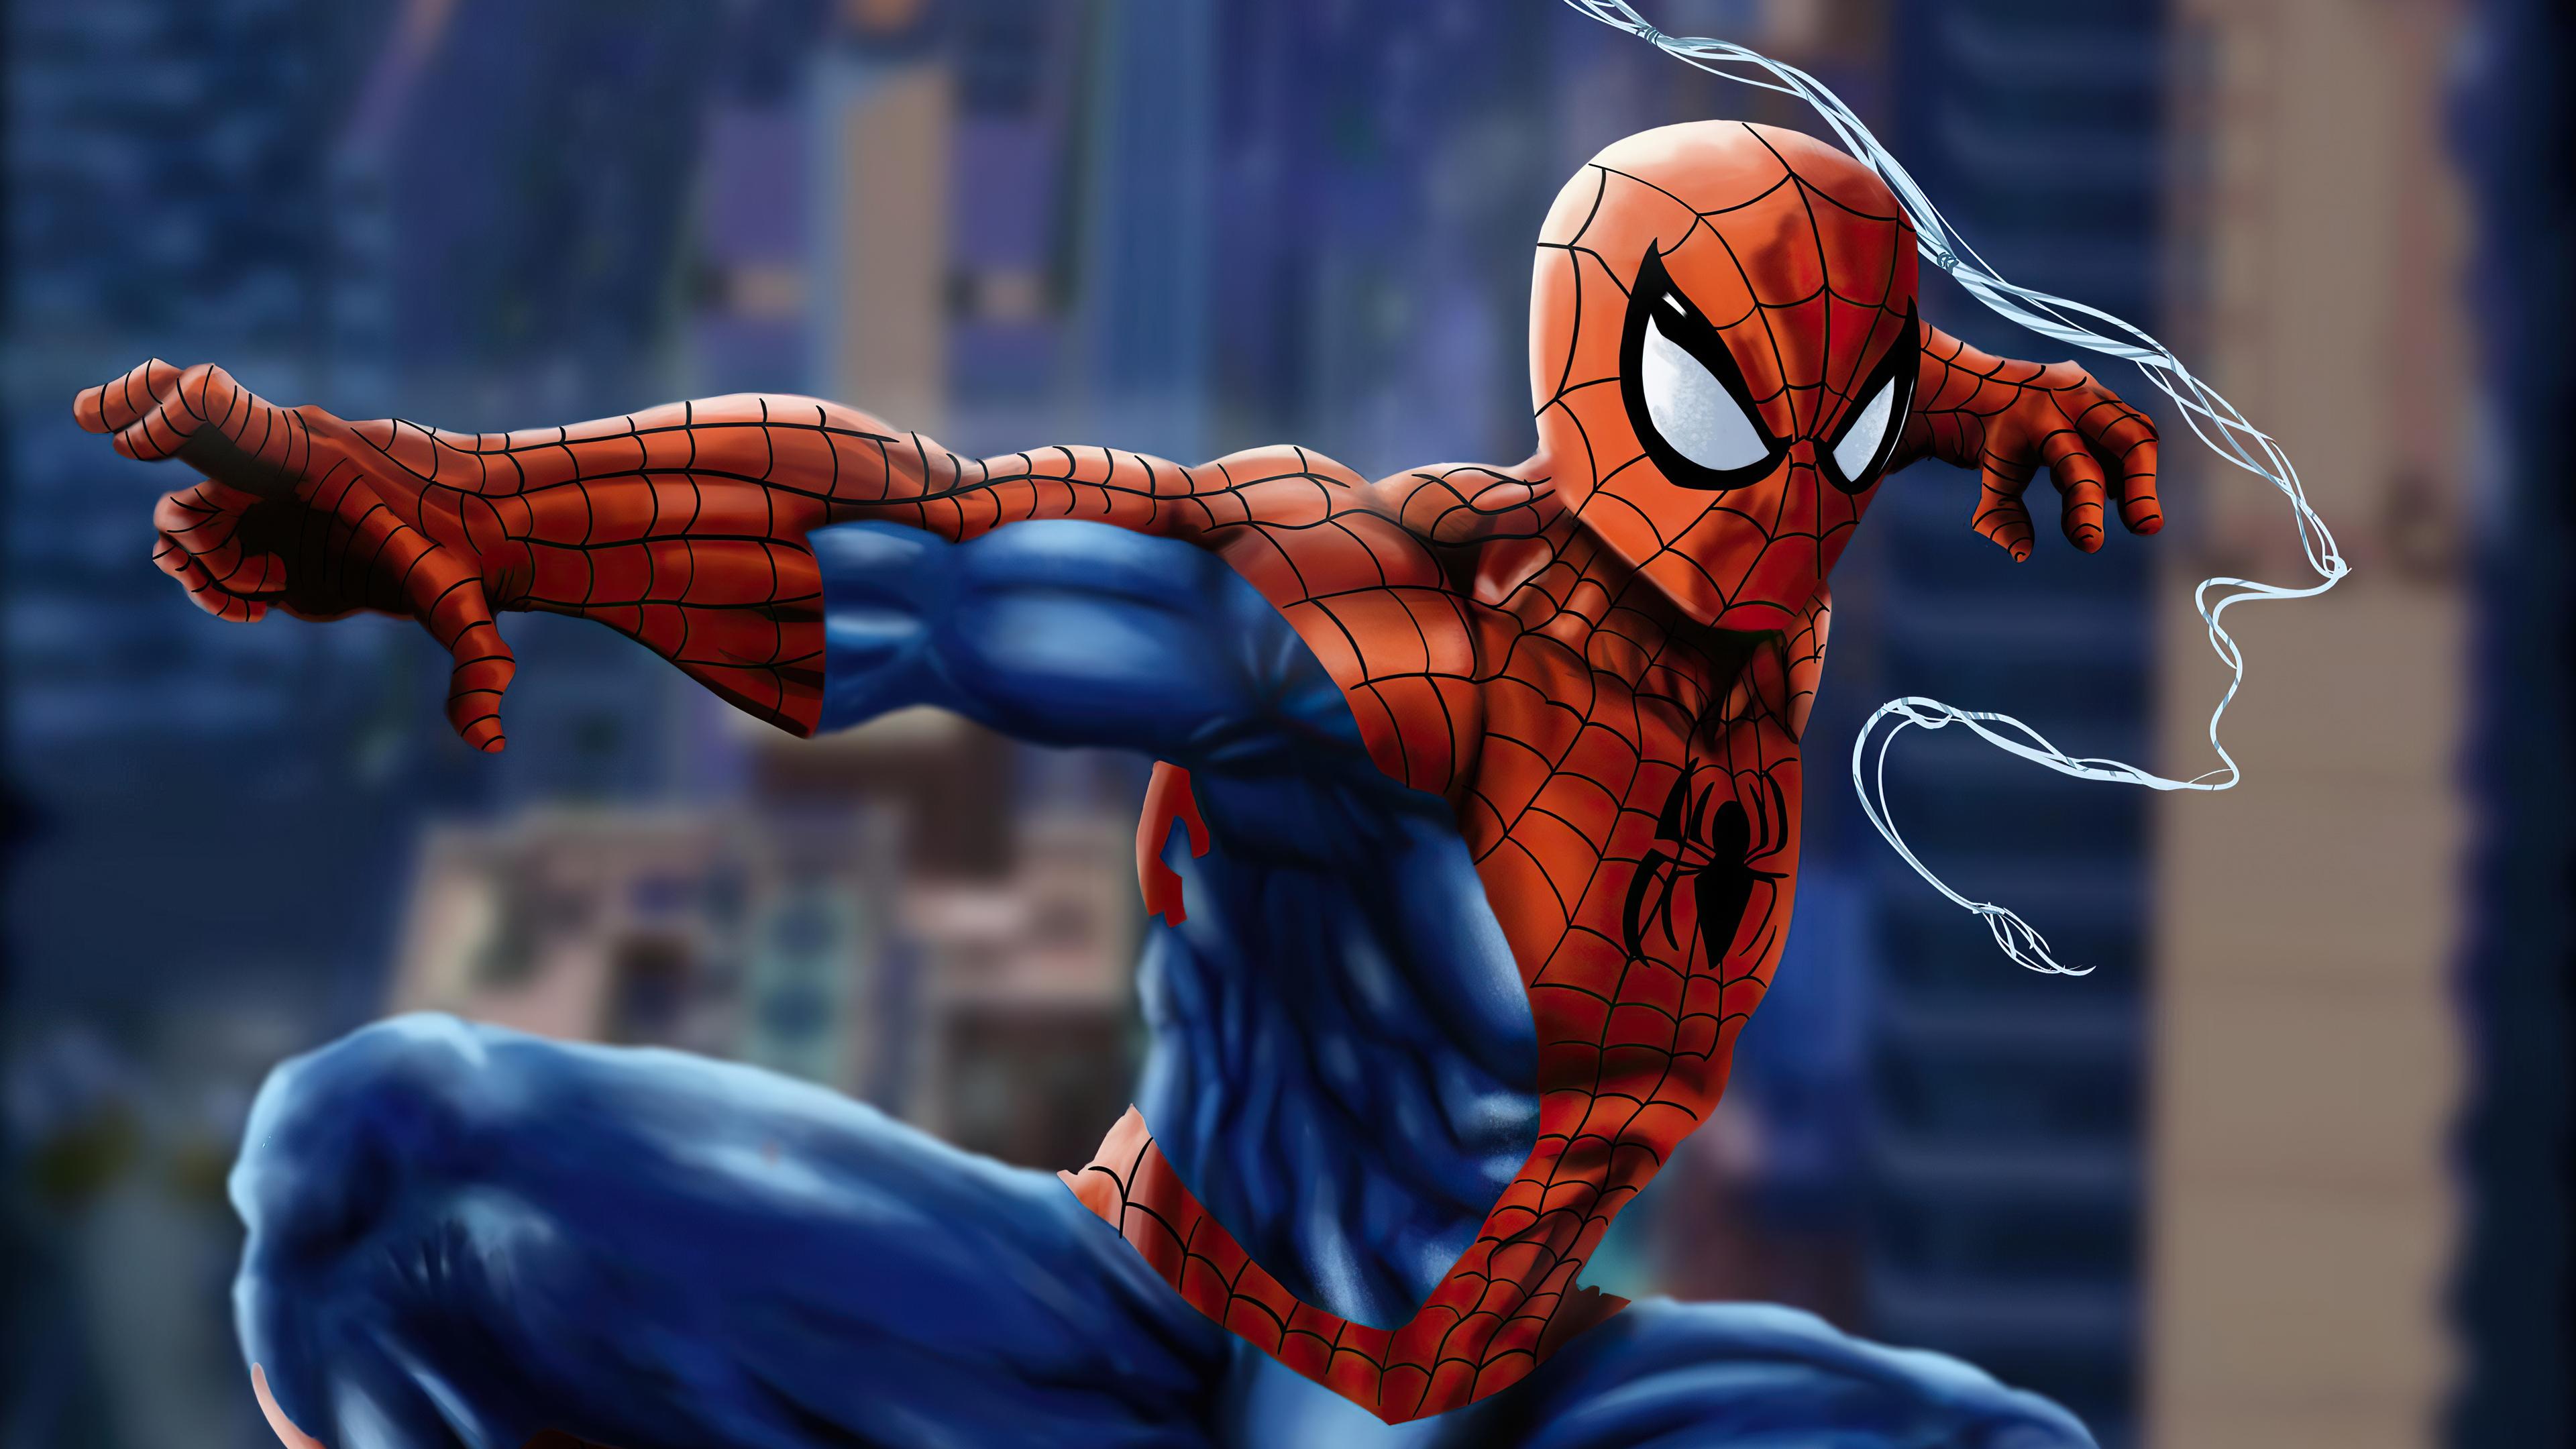 3840 x 2160 · jpeg - Spider-Man 4k Ultra HD Wallpaper | Background Image | 3840x2160 | ID ...